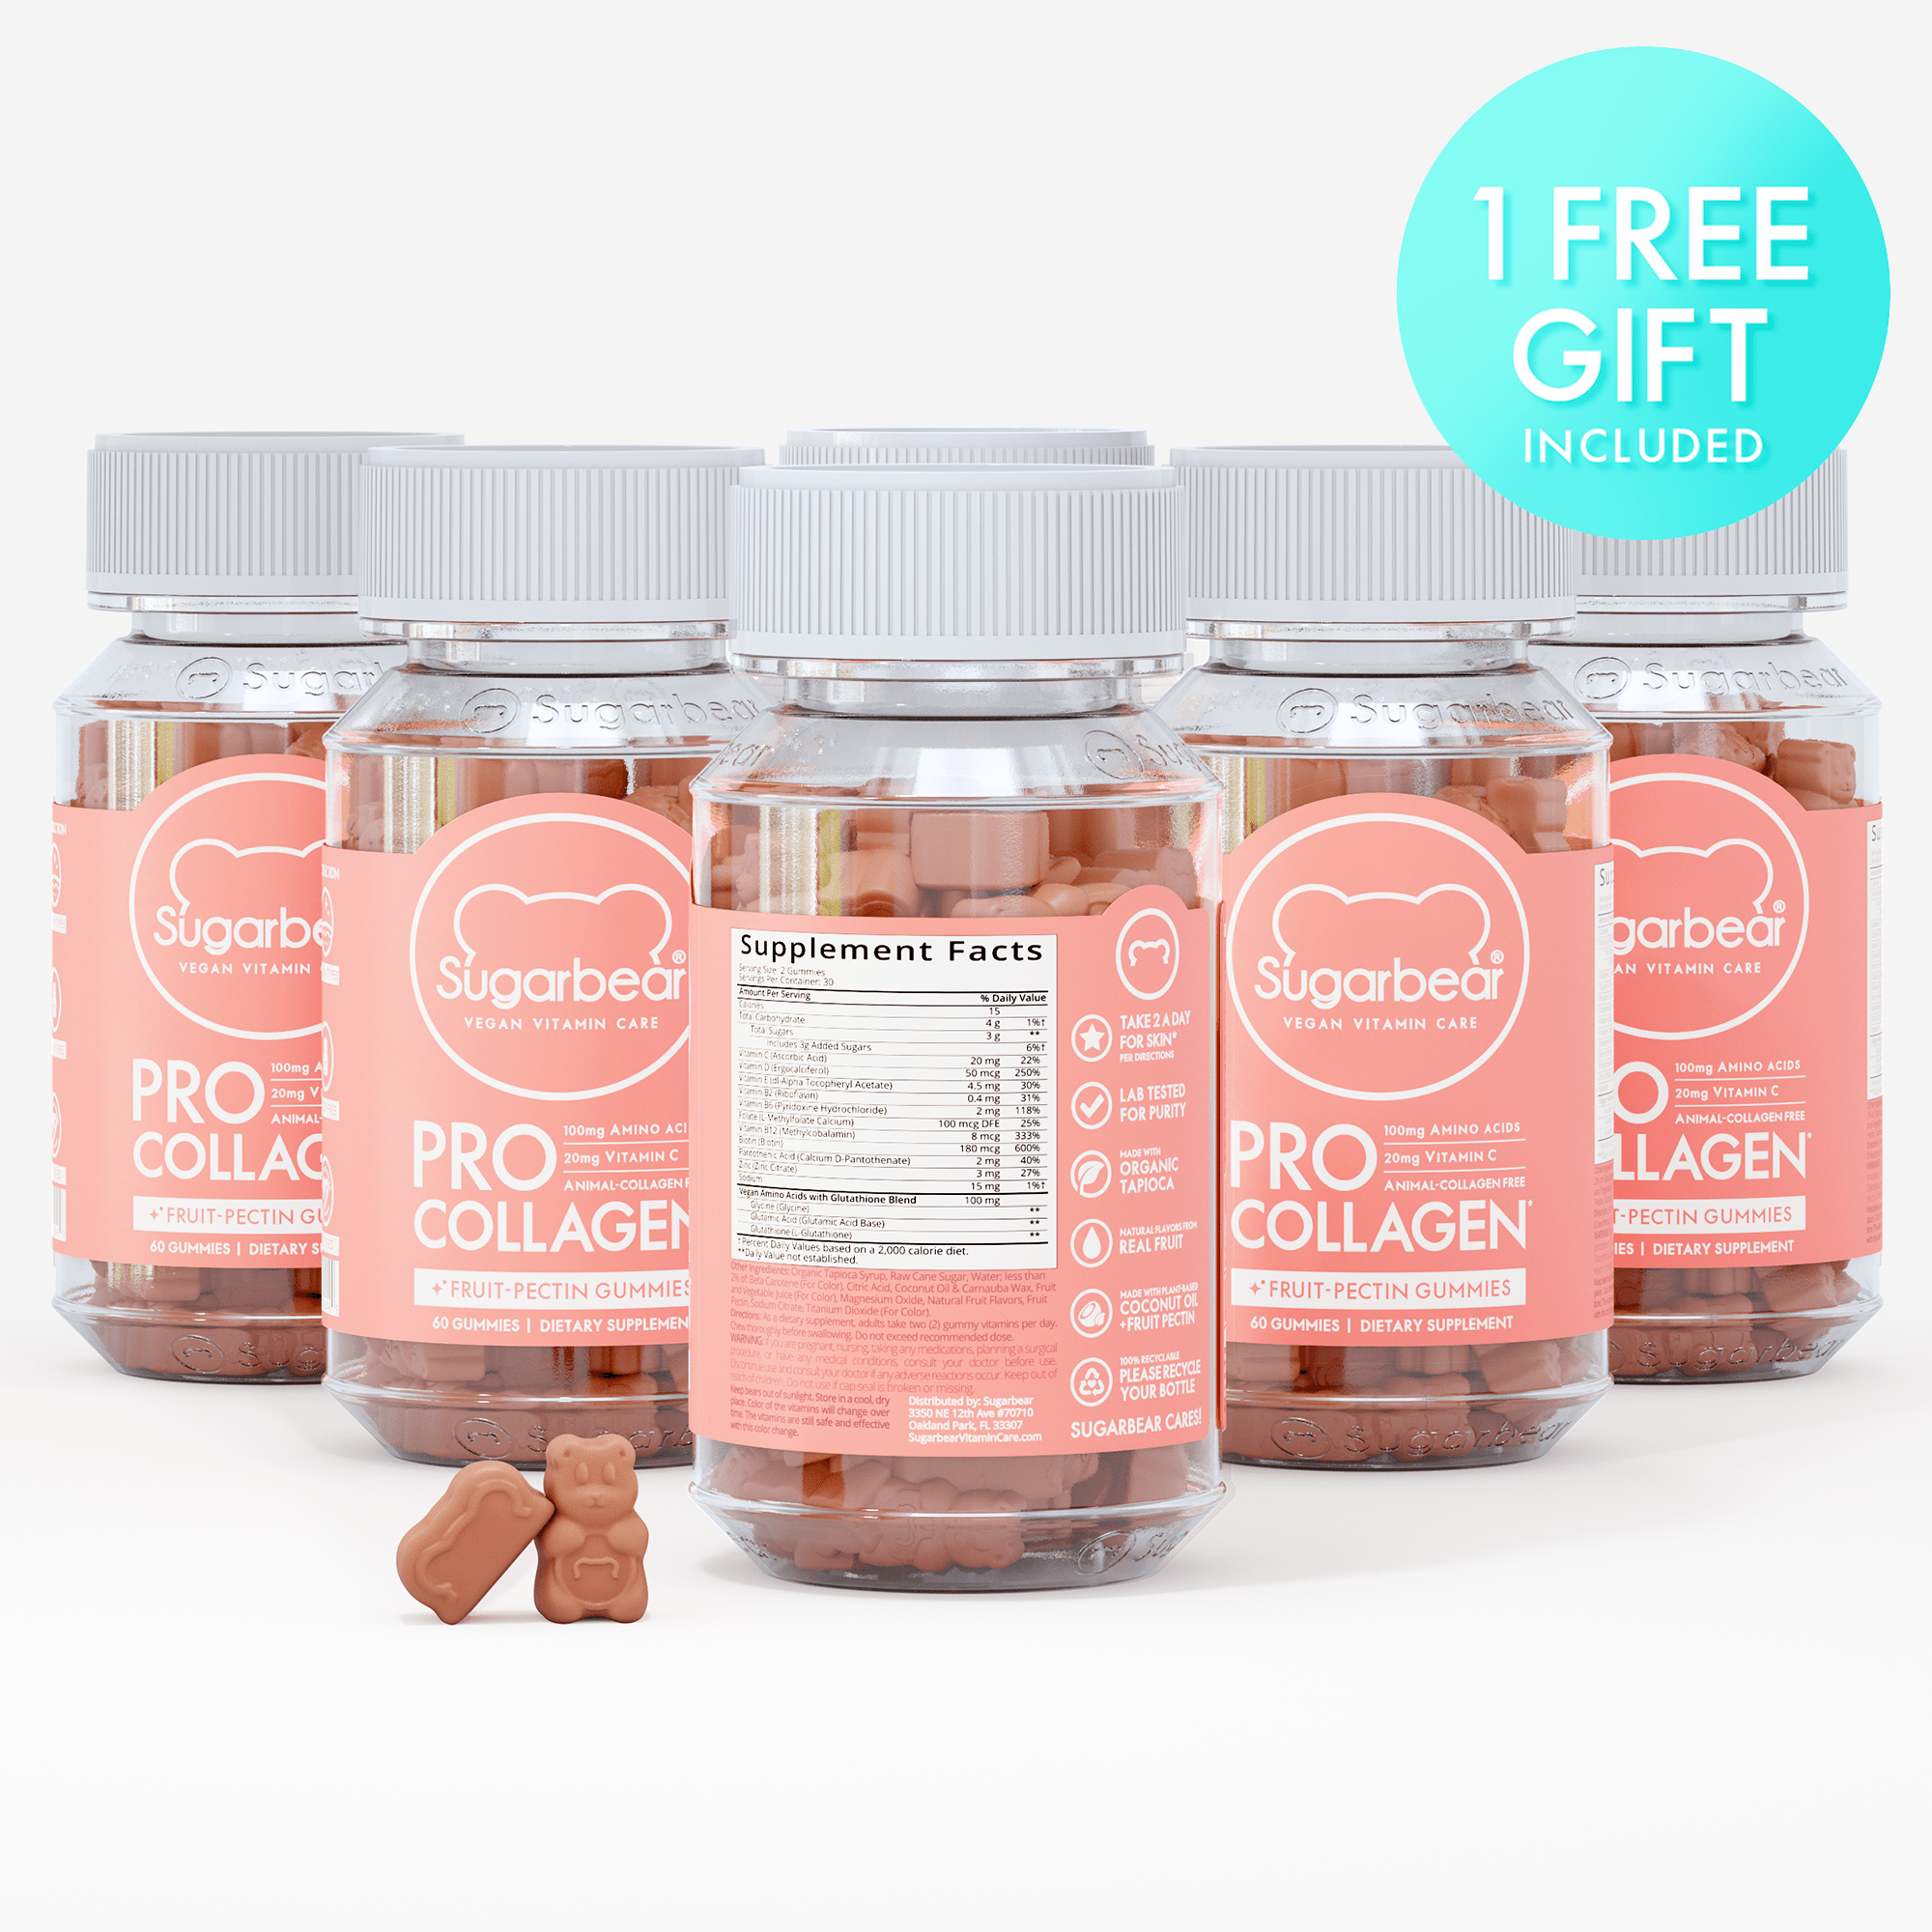 Sugarbear ProCollagen Vitamins - Paquete de 6 meses + regalo gratis